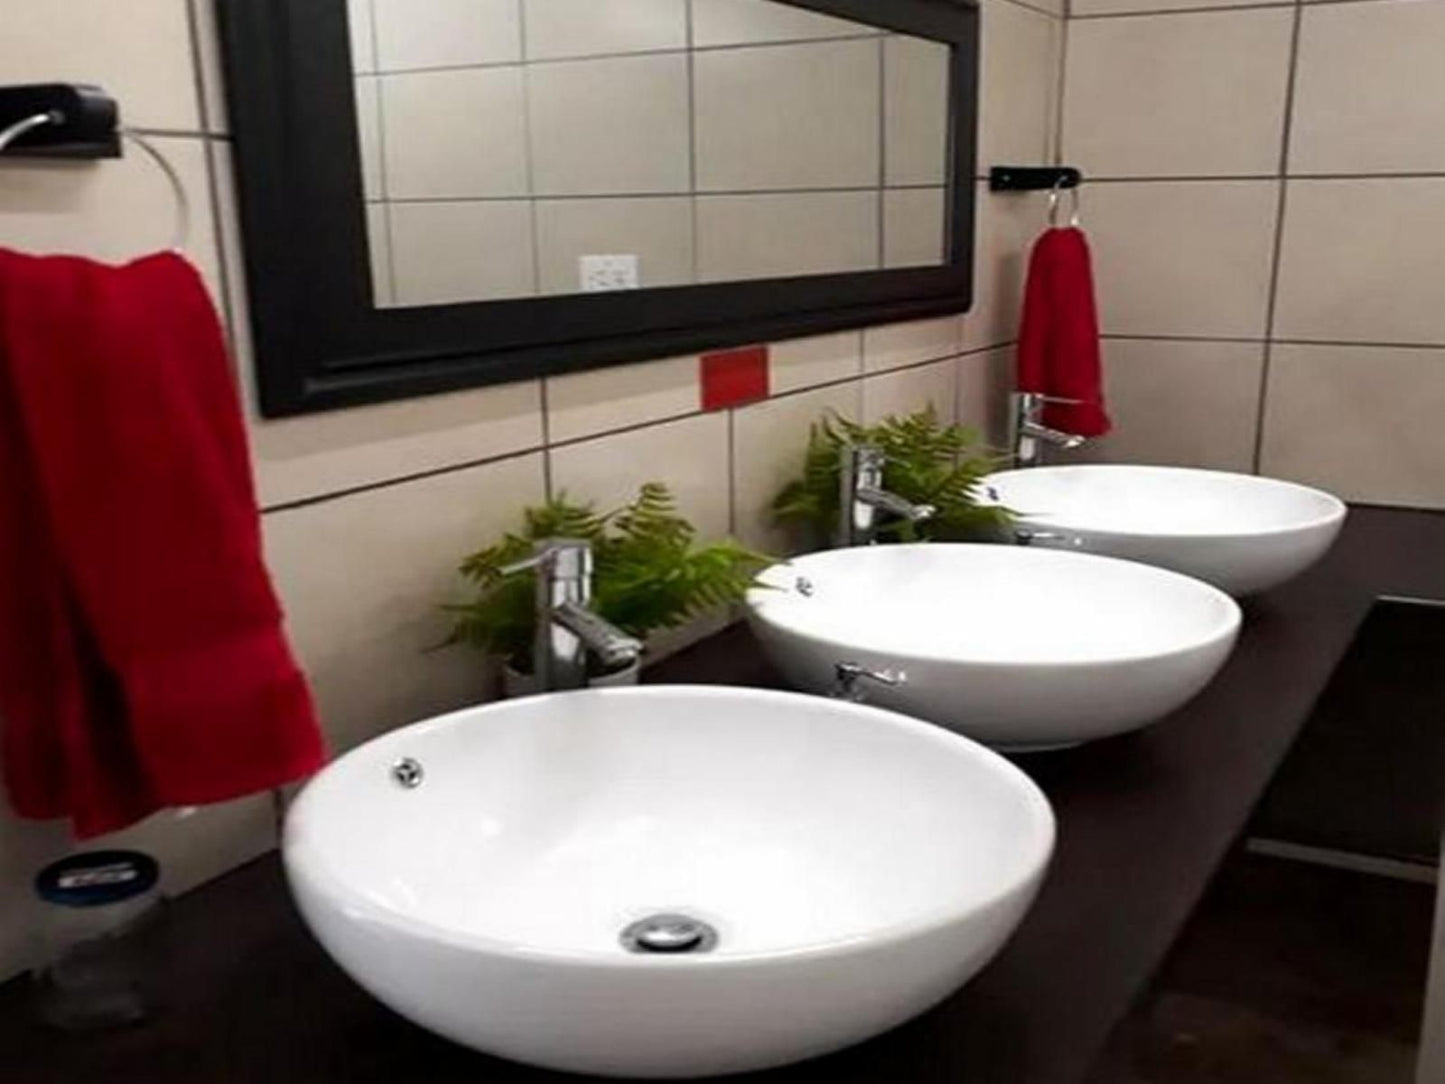 Honne Pondokkies Hondeklipbaai Northern Cape South Africa Bathroom